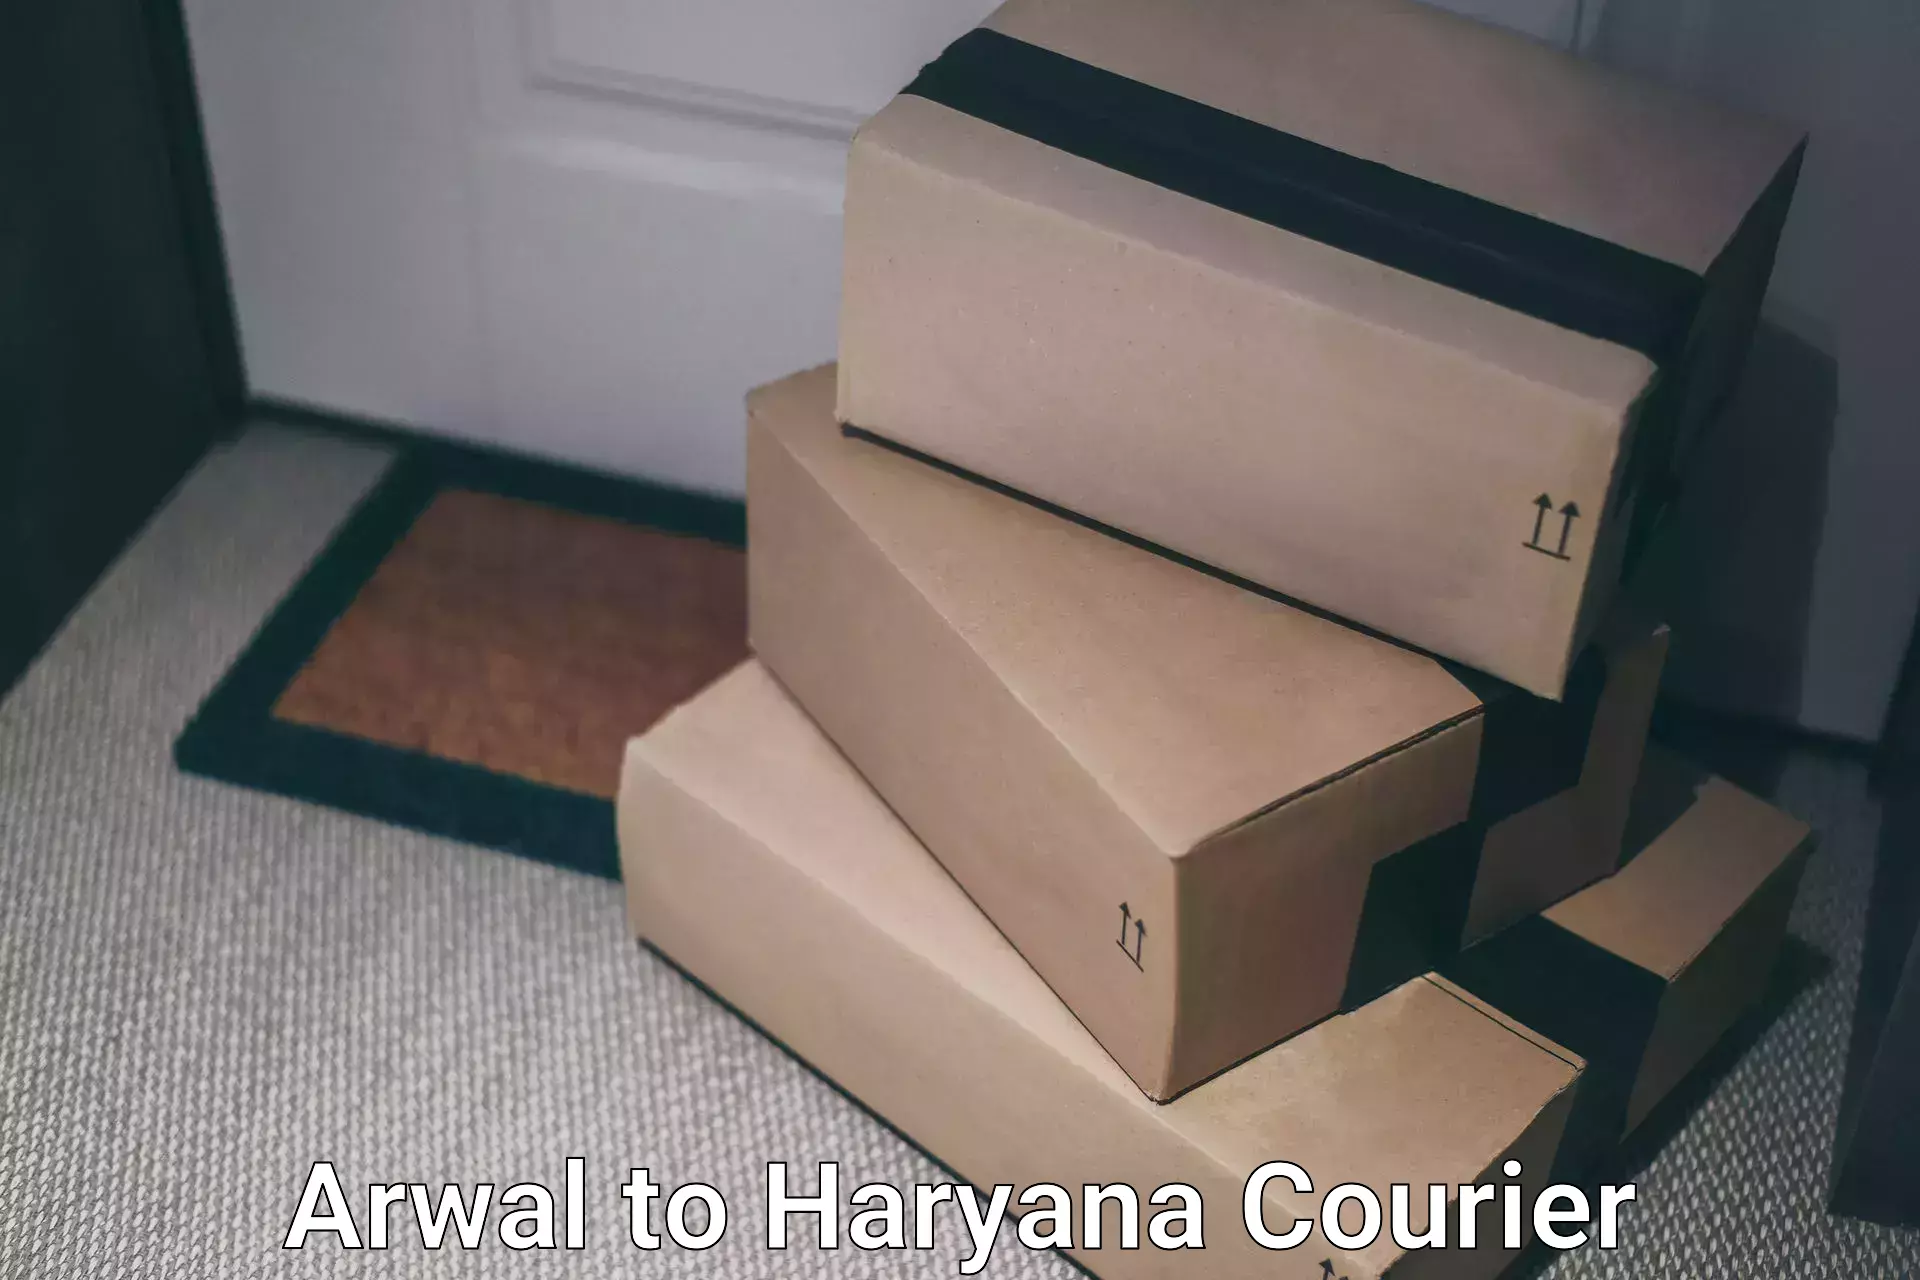 High-capacity shipping options Arwal to Charkhari